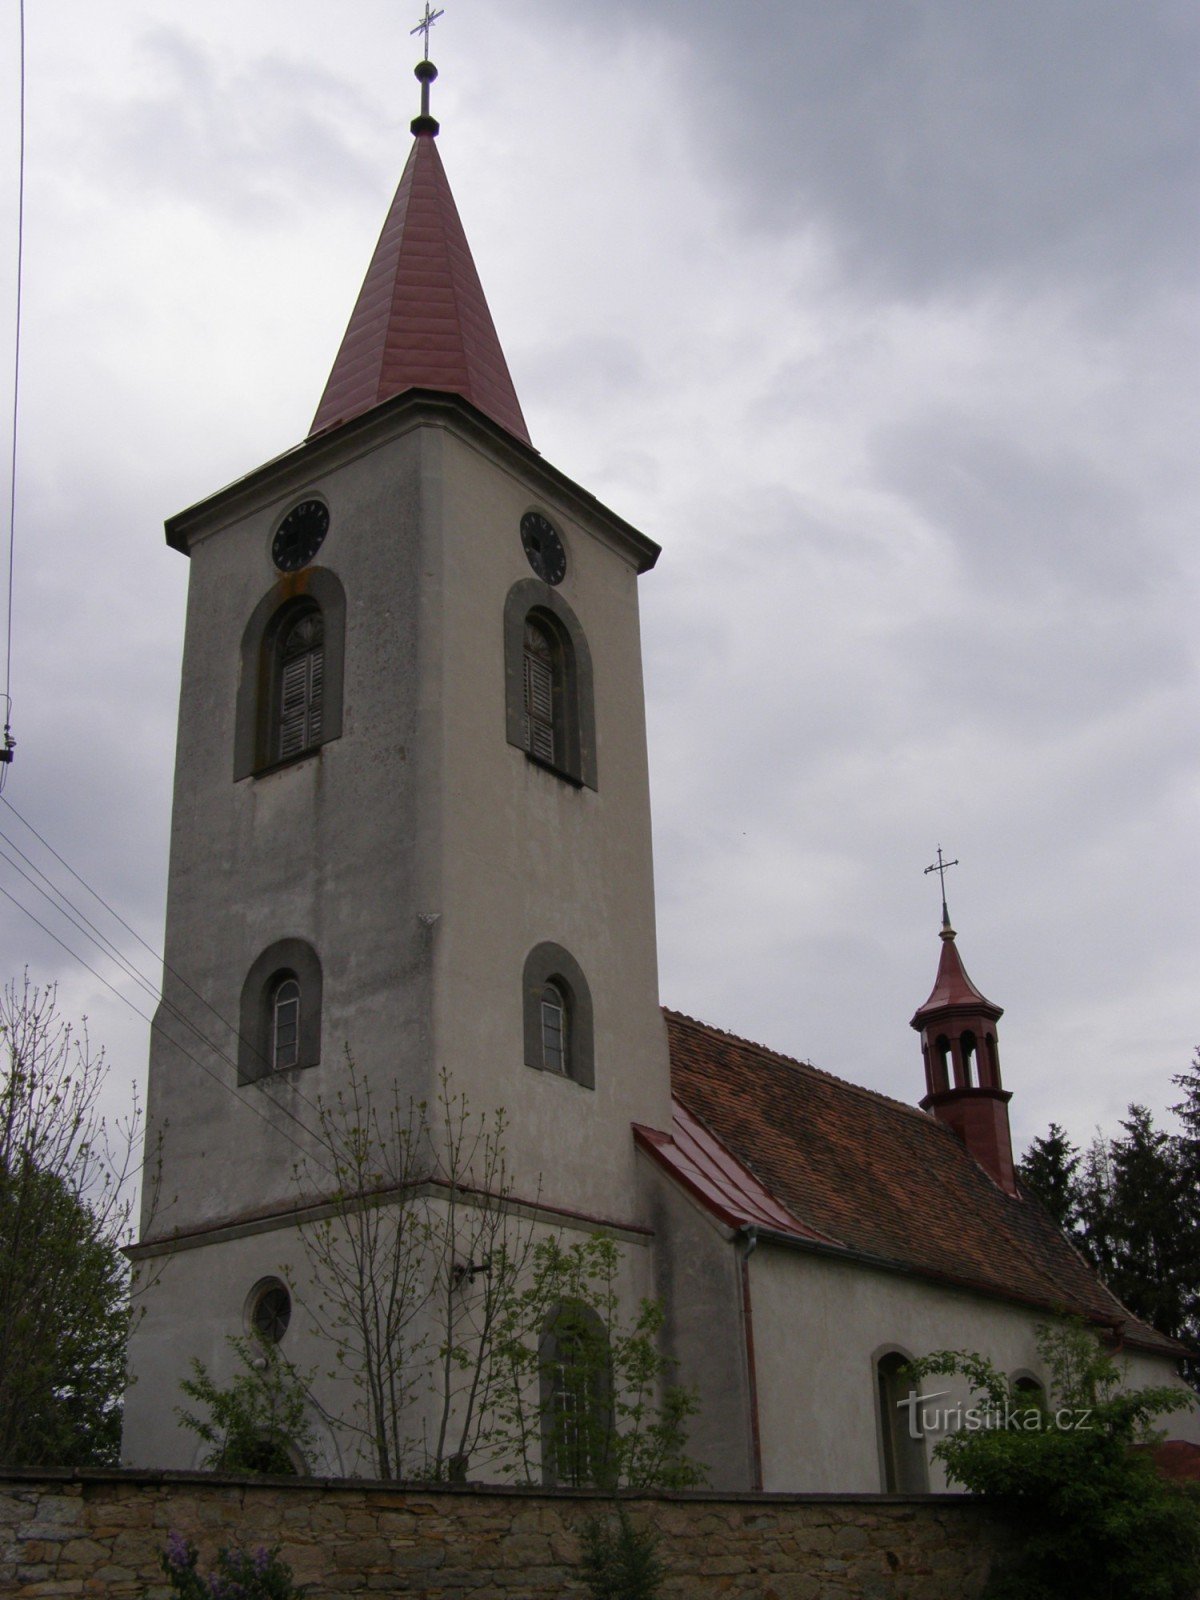 Semonice - crkva sv. Tržišta